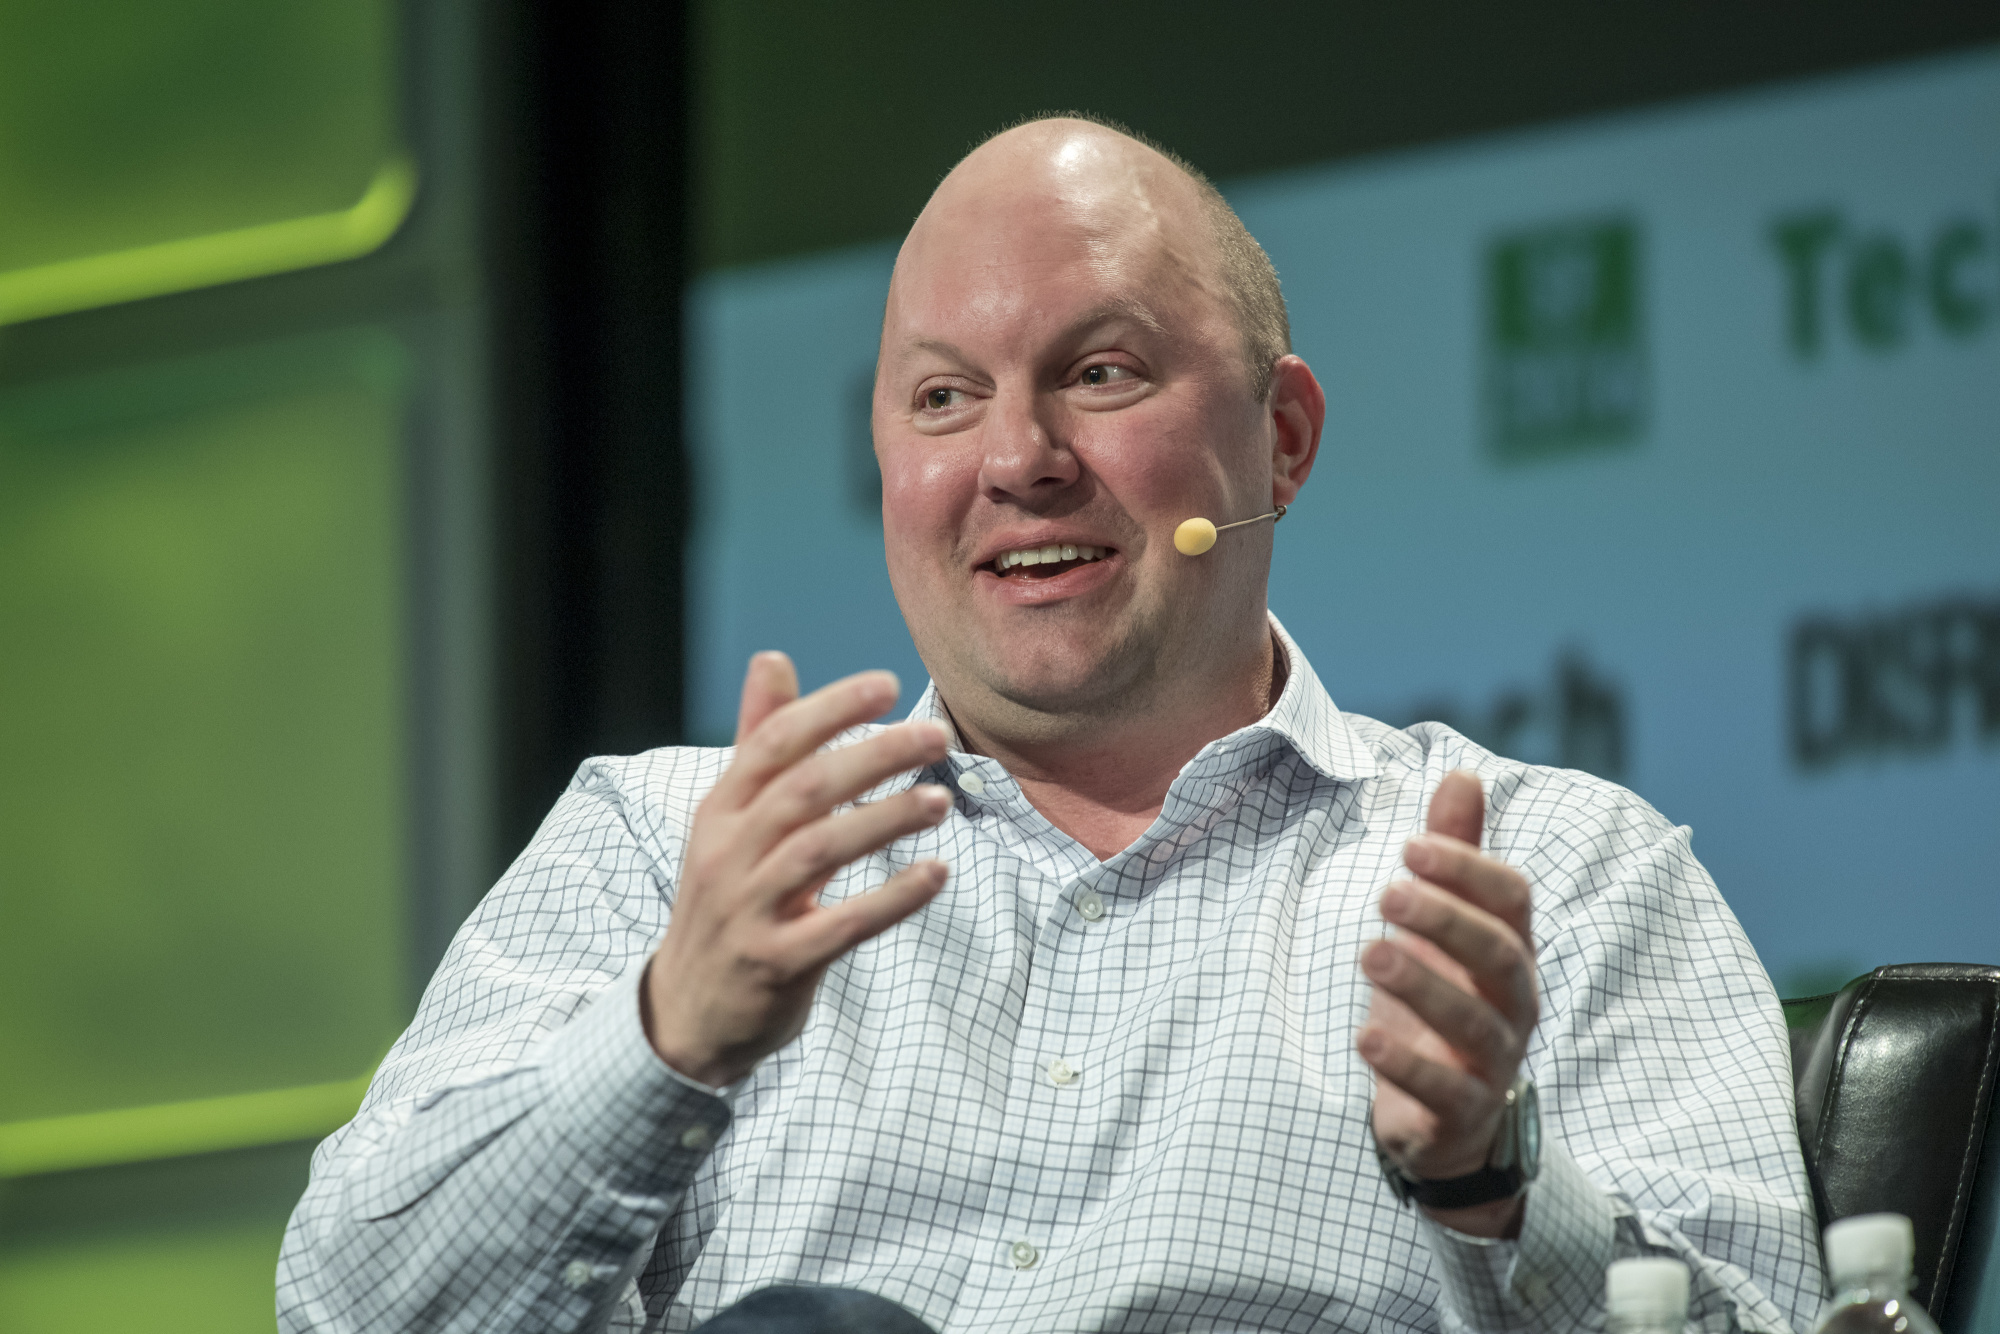 Andreessen Horowitz New Media Property to Debut in 2021 - Bloomberg